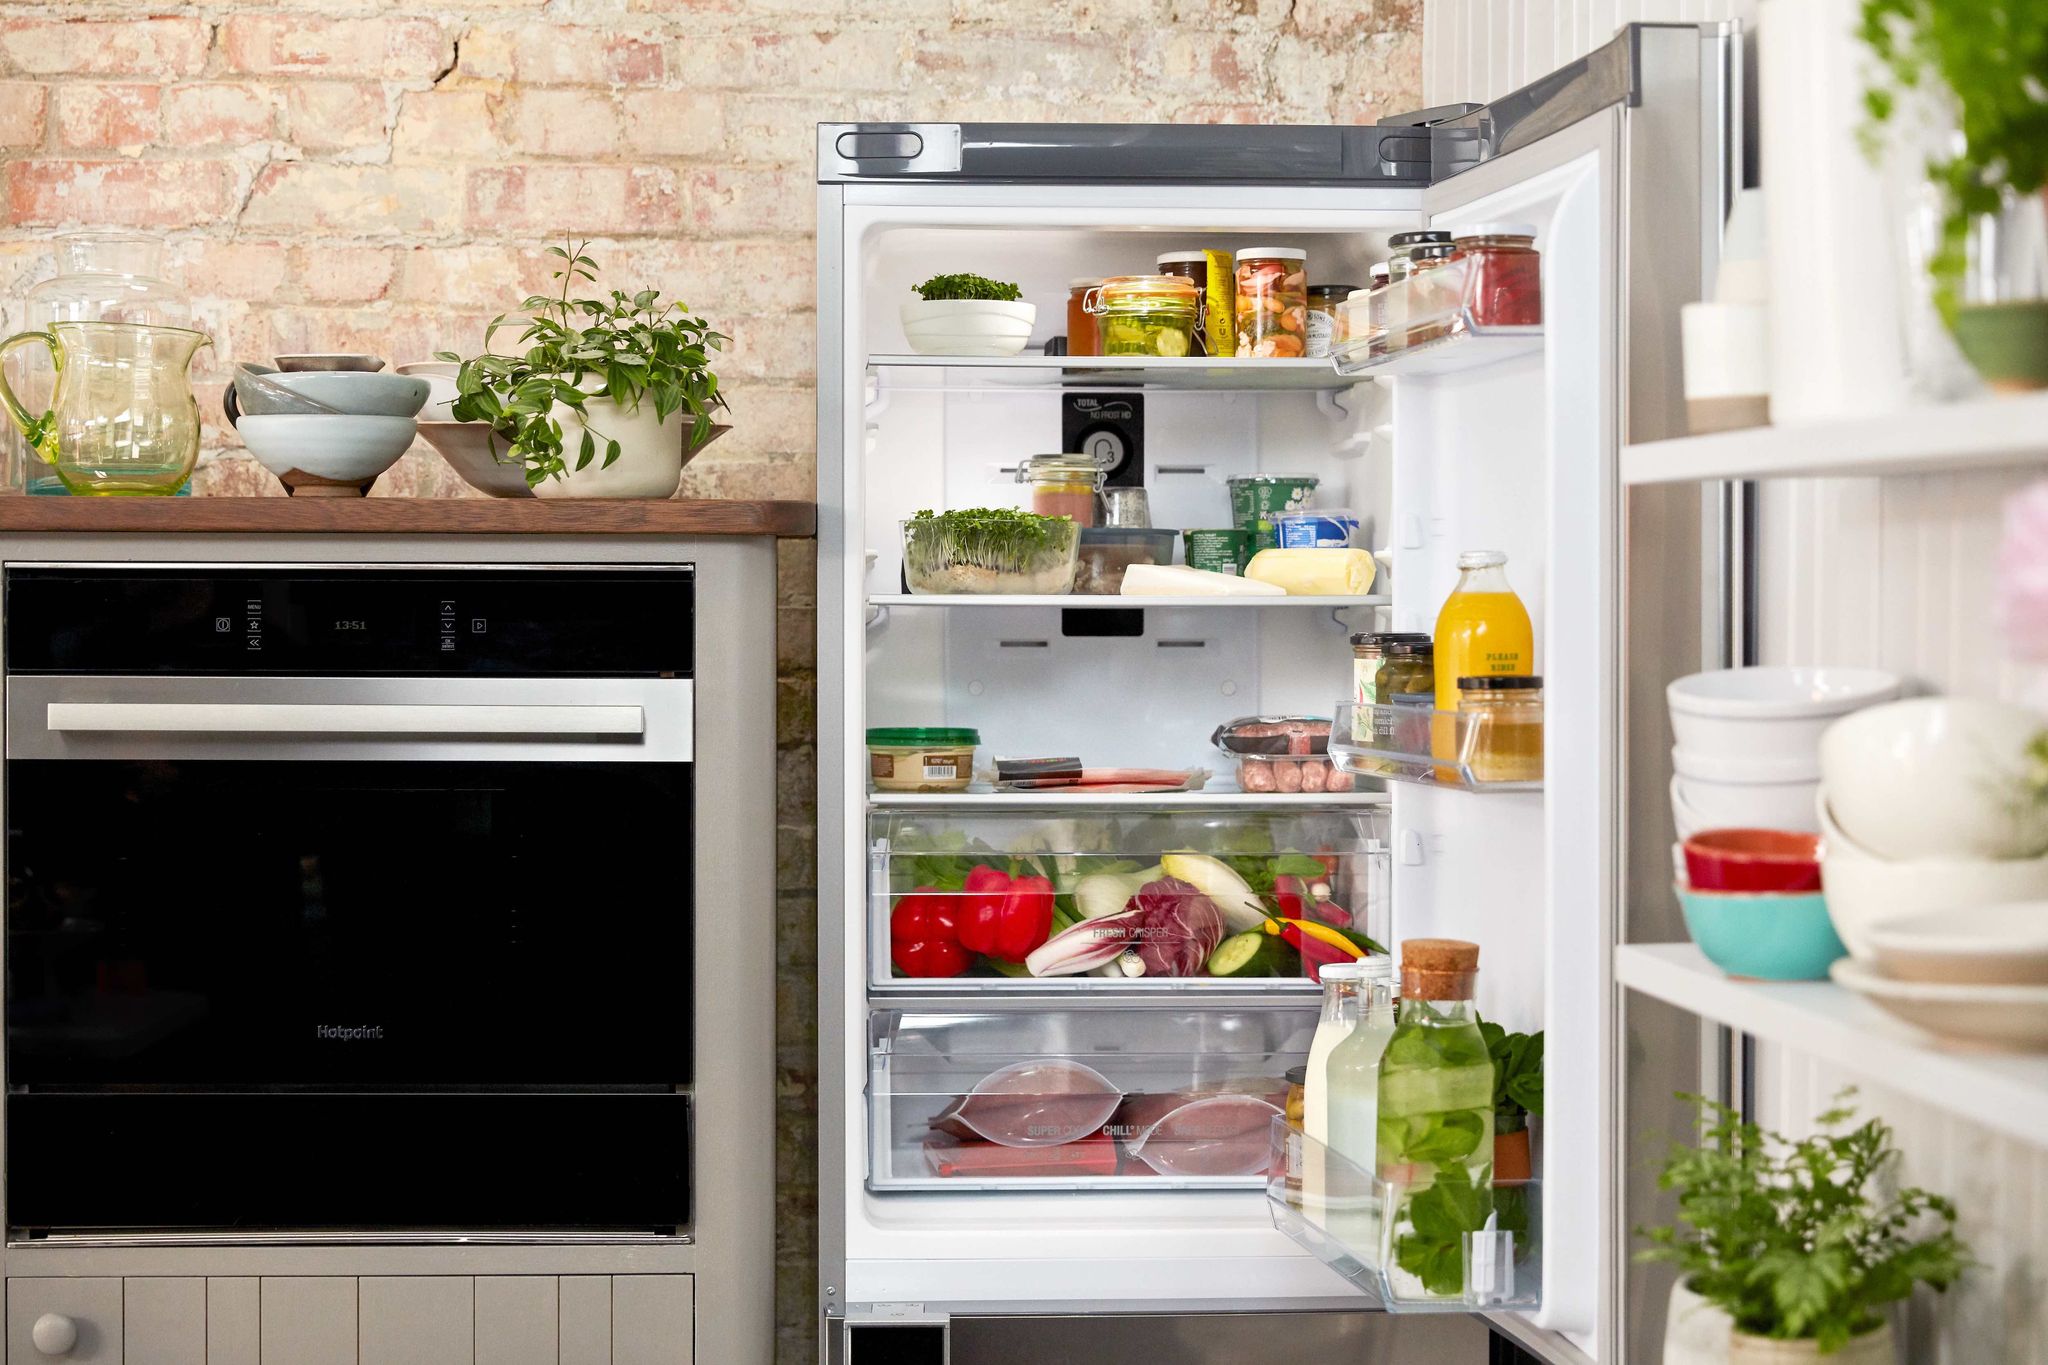 Jamie Oliver - Food Waste - fridge - Hotpoint